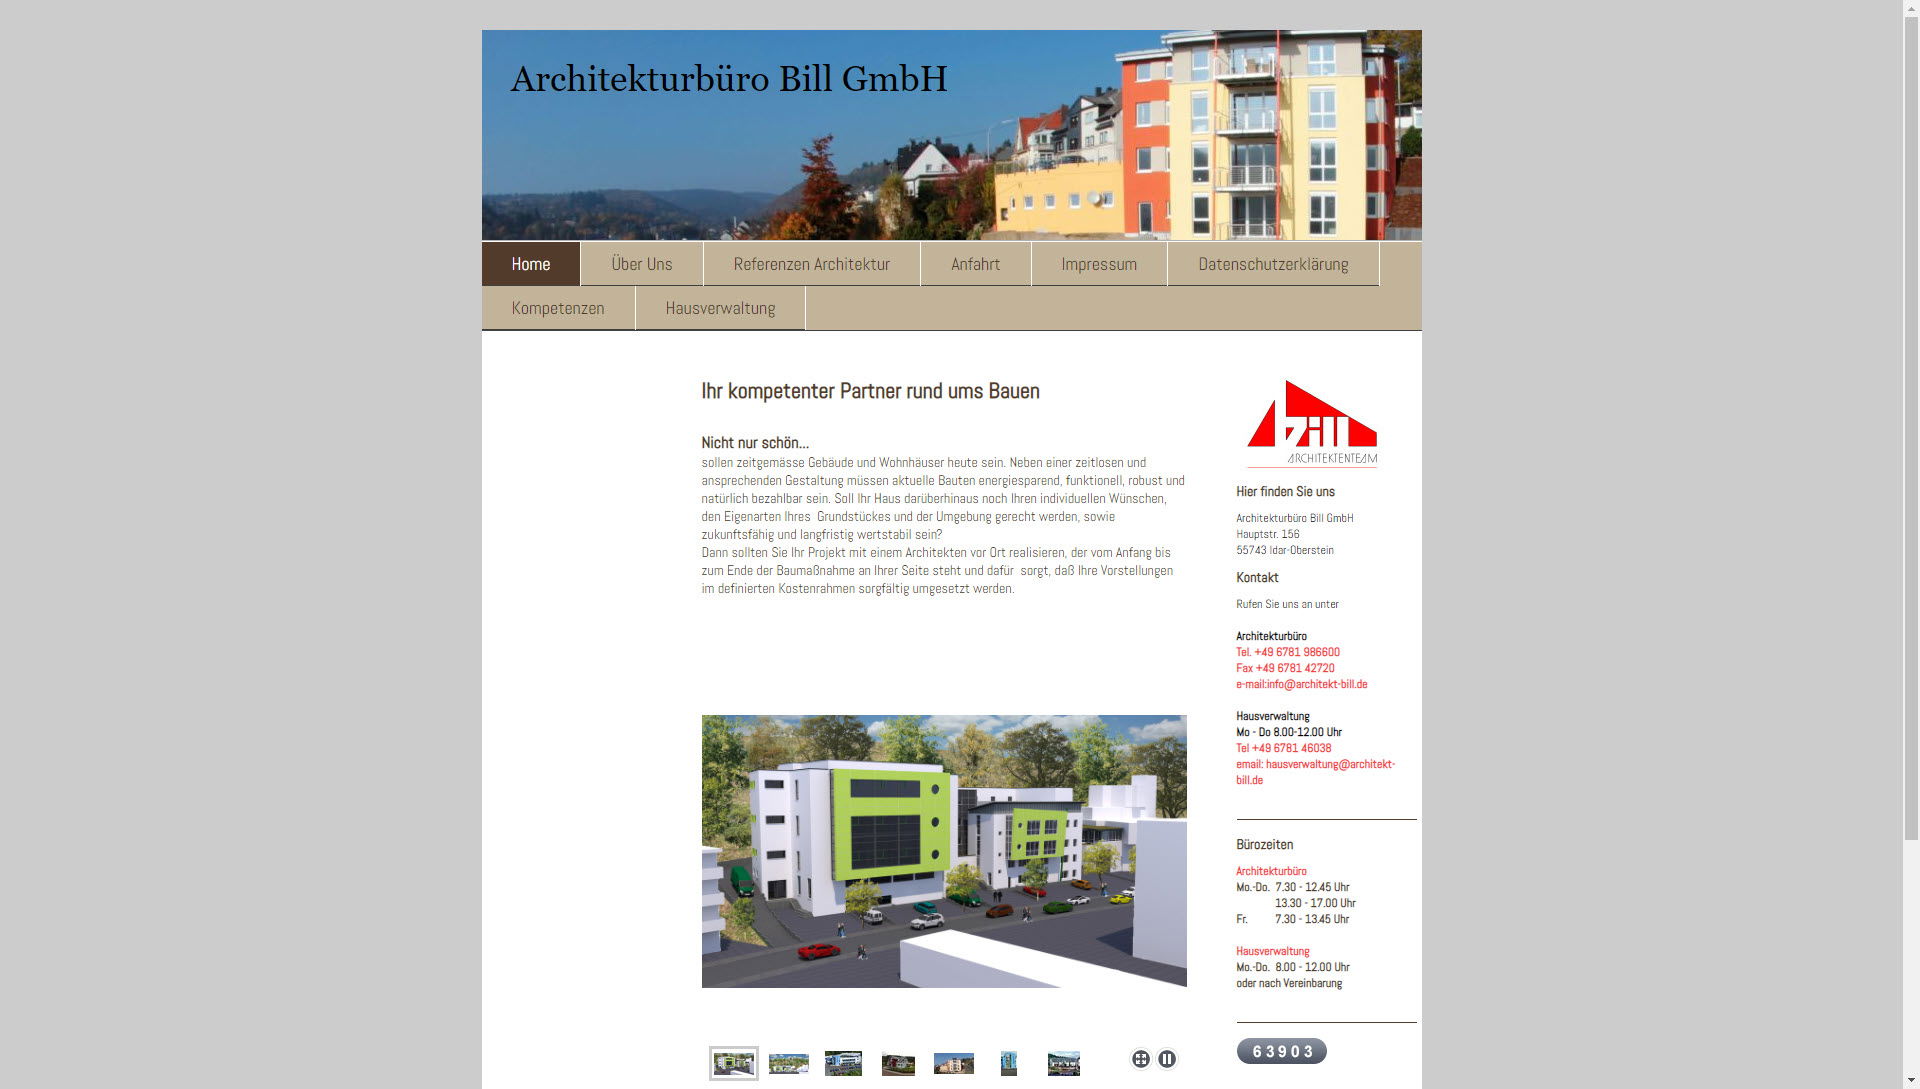 Bill GmbH